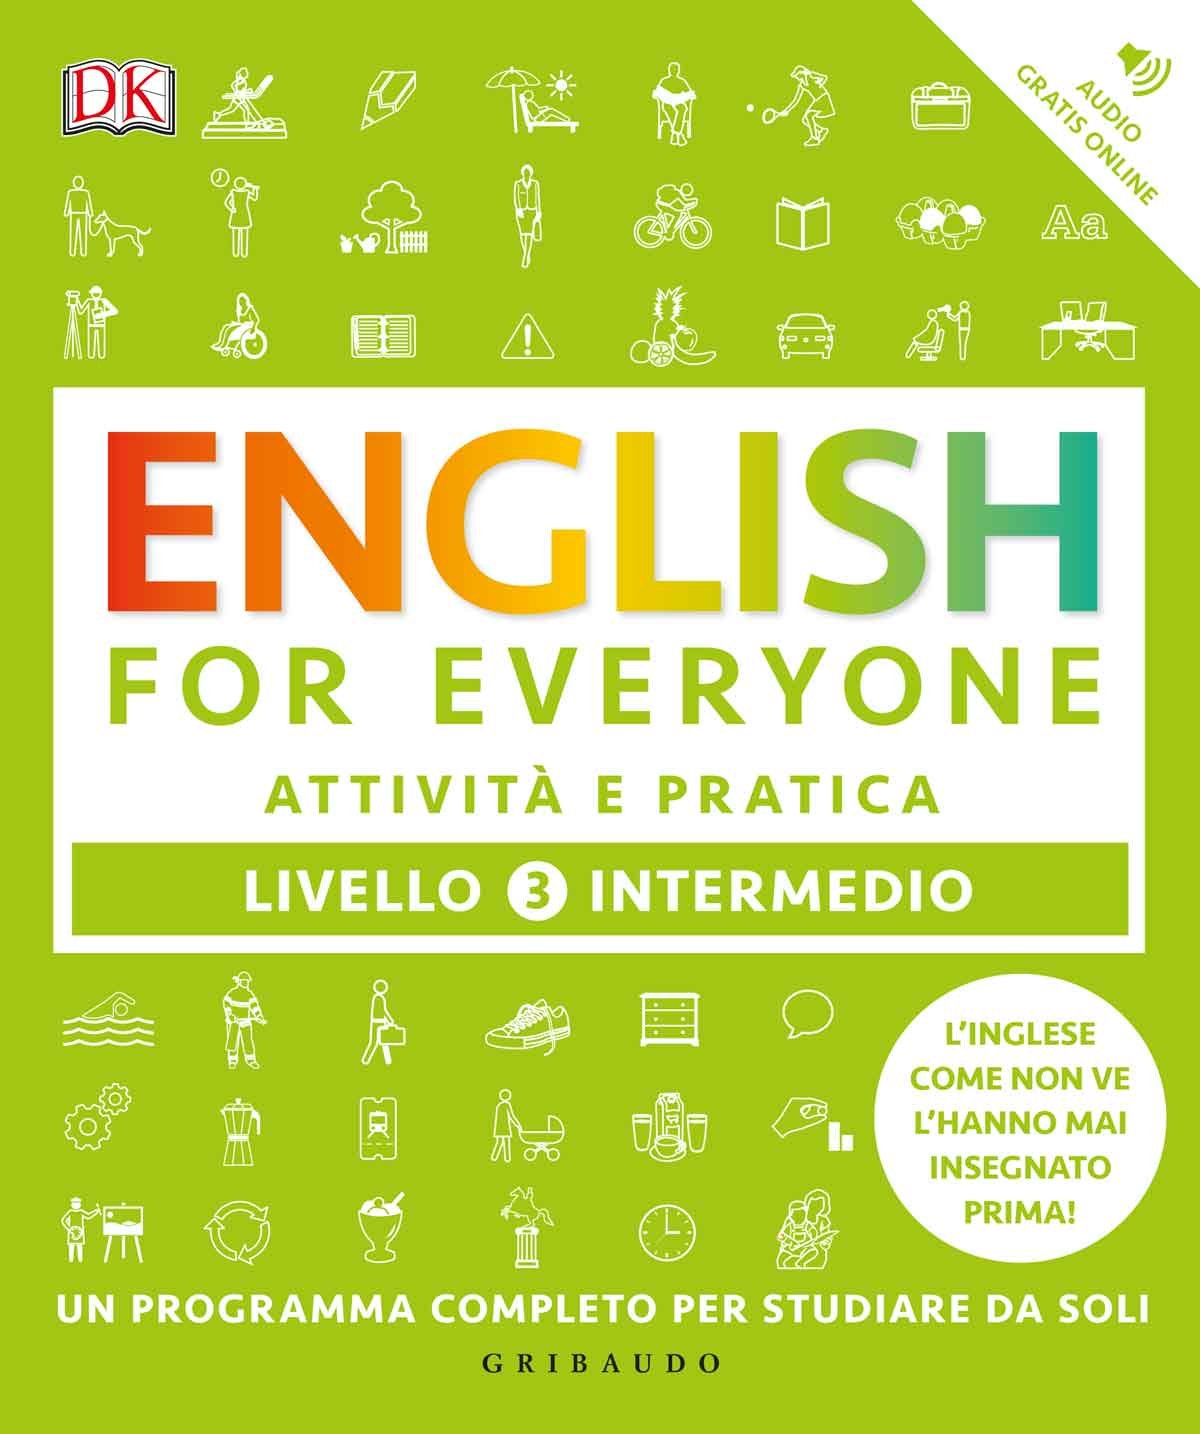 English for everyone - Livello 3 intermedio - Attività e pratica